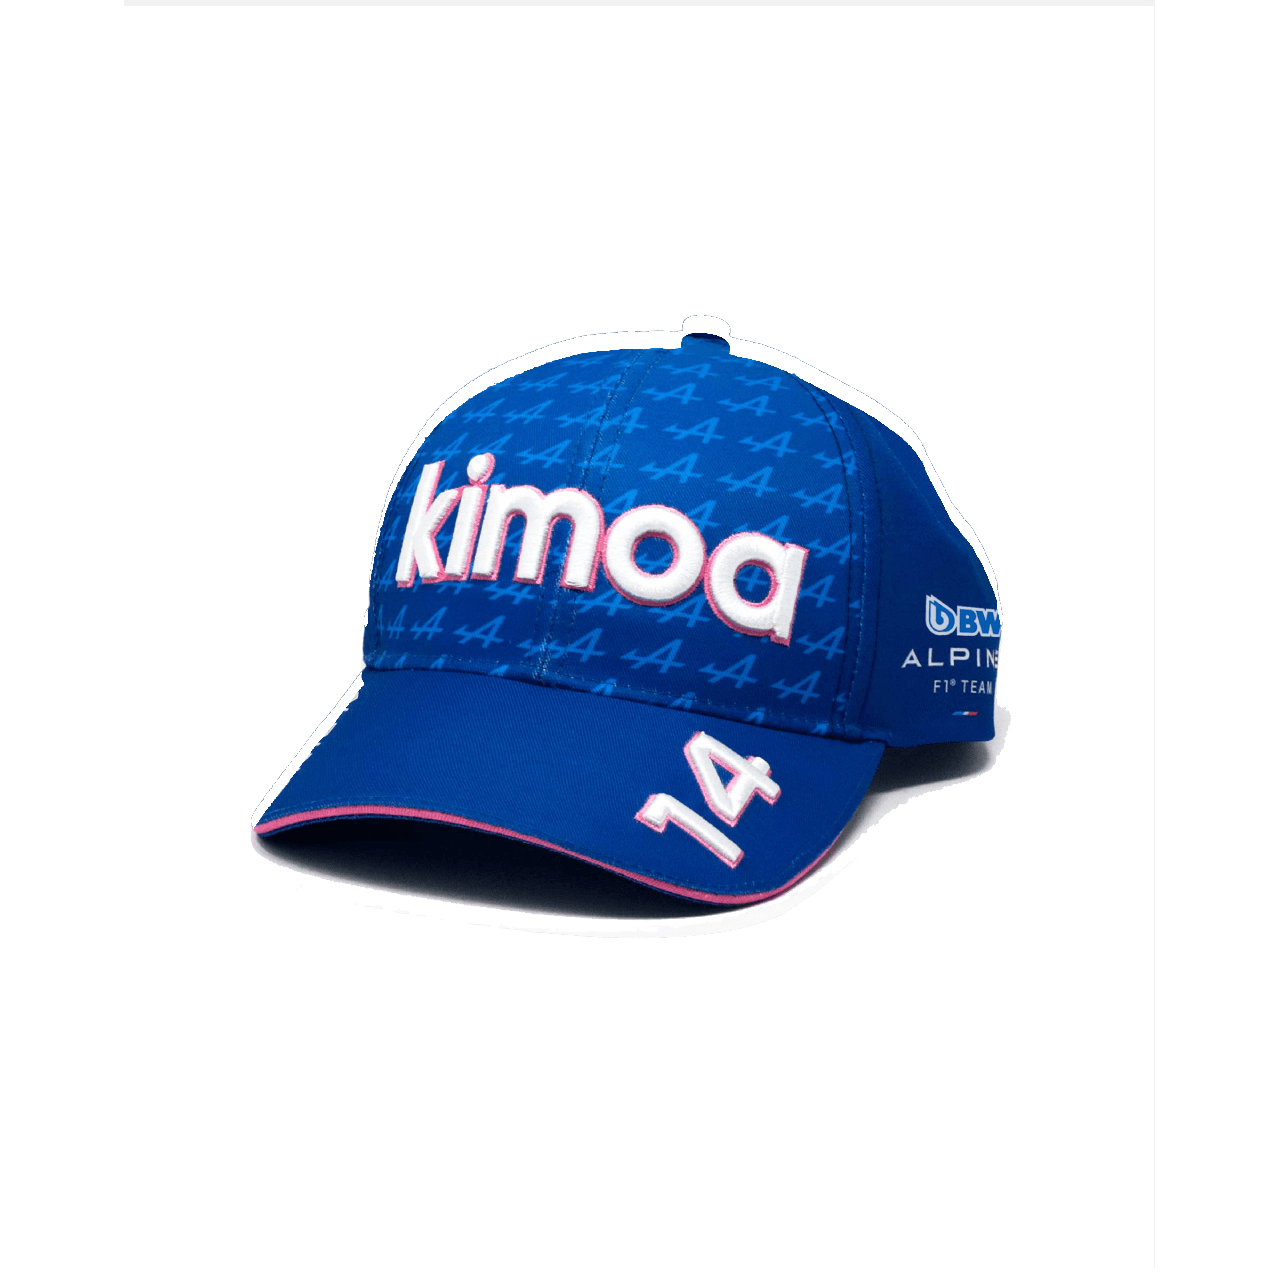 Kimoa BWT ALPINE F1 Snappack casquette bleue avec éléments blancs et roses